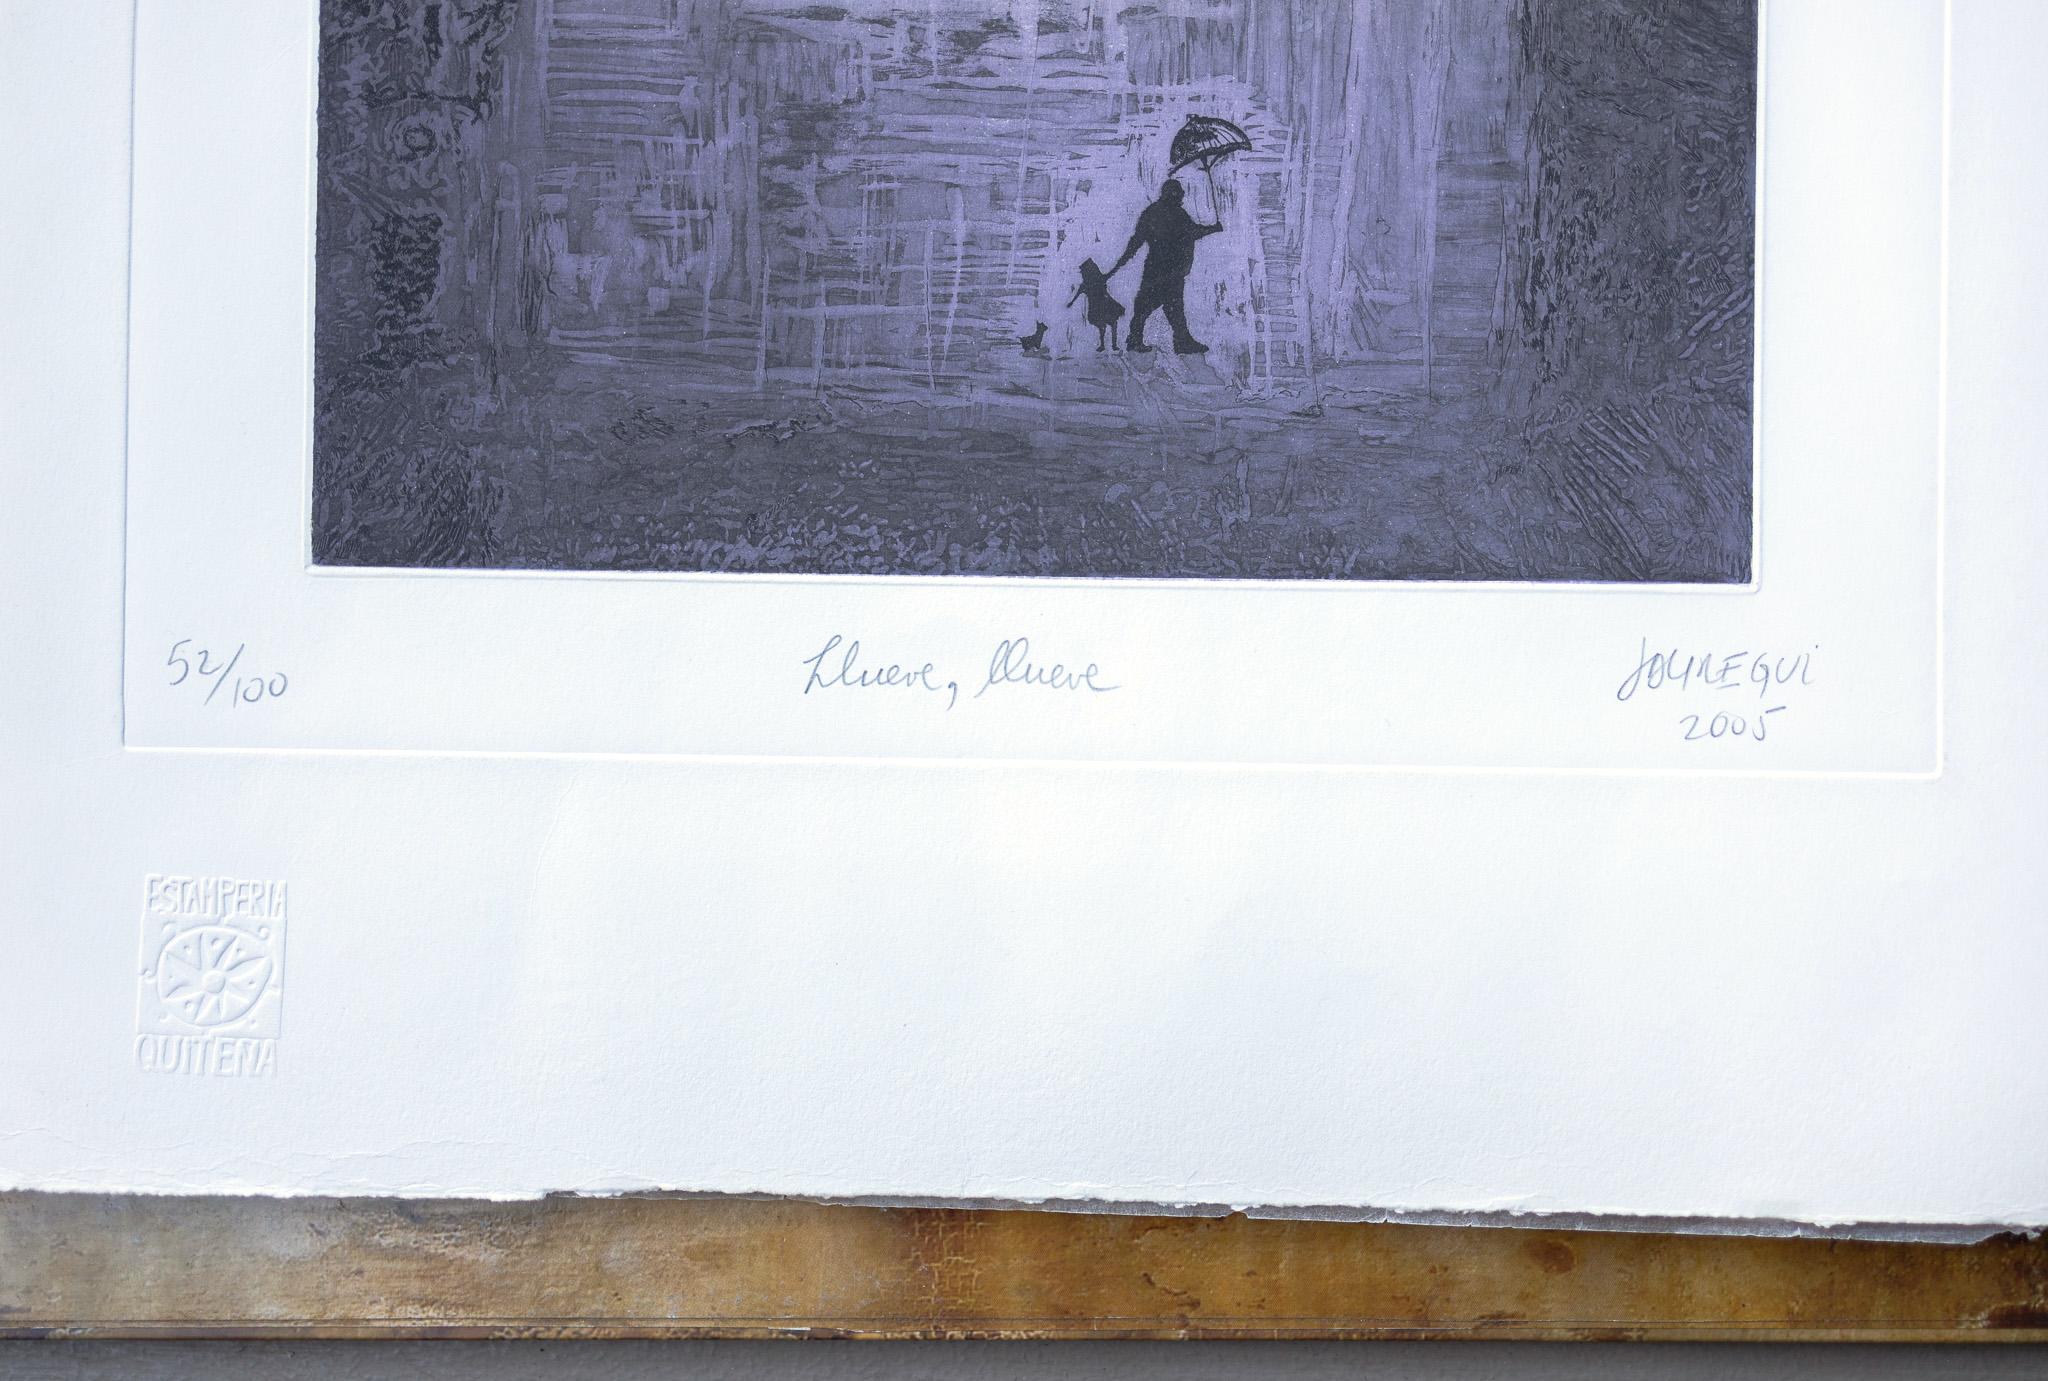 Diese figurative Arbeit von Paul Jauregui ist eine handkolorierte Radierung, die die Silhouette eines Vaters, seiner Tochter und ihres kleinen Hundes zeigt, die im Regen spazieren gehen. Der Vater hält einen Regenschirm und führt sein Kind an der